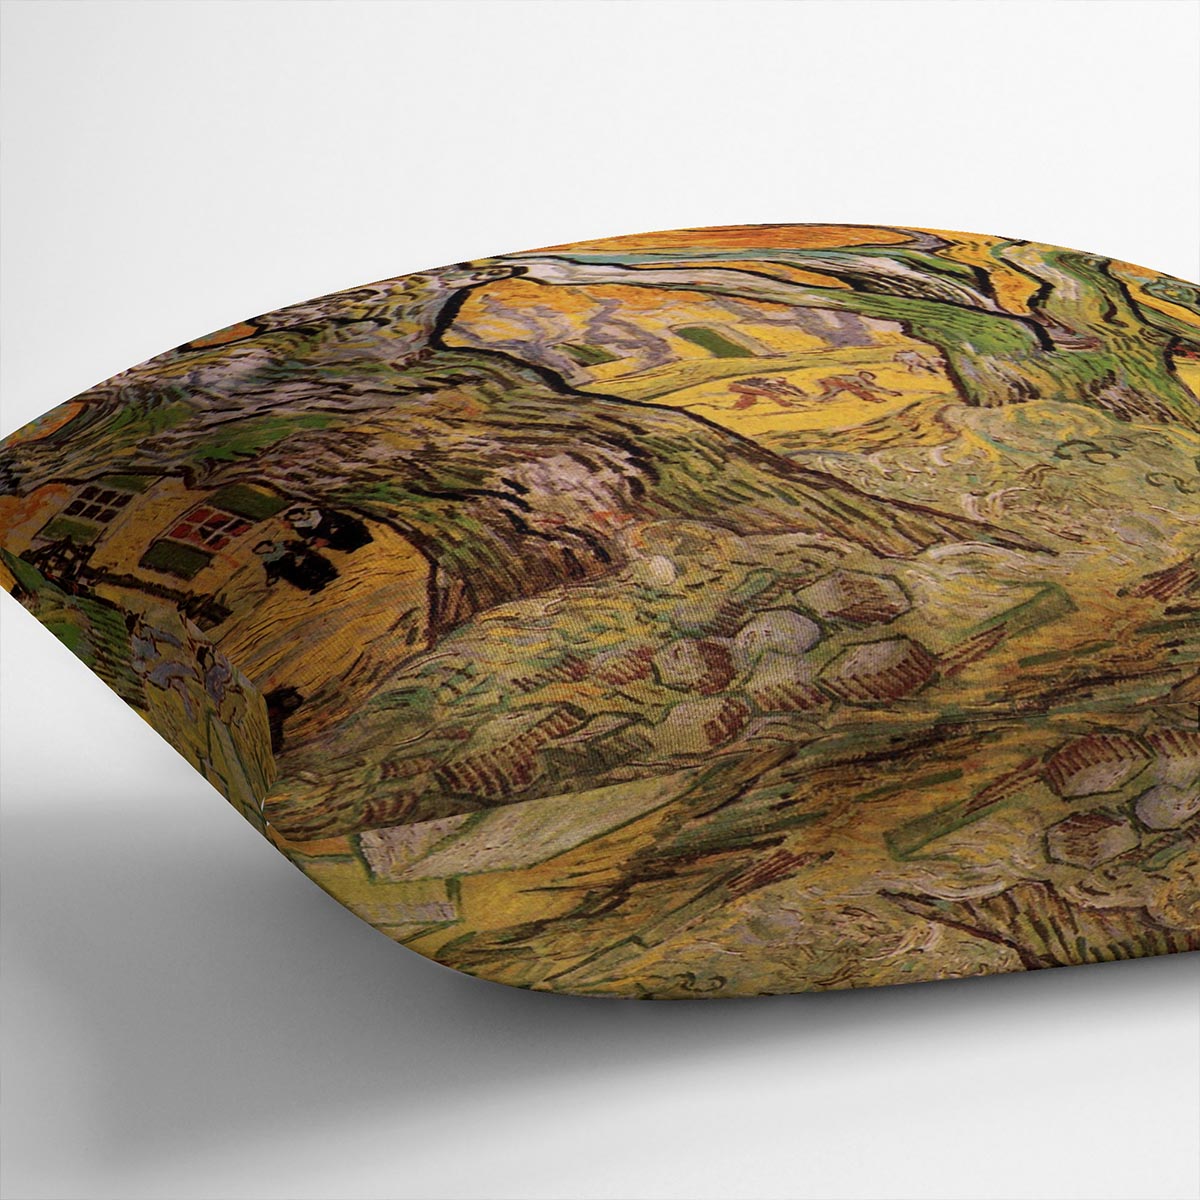 The Road Menders by Van Gogh Cushion